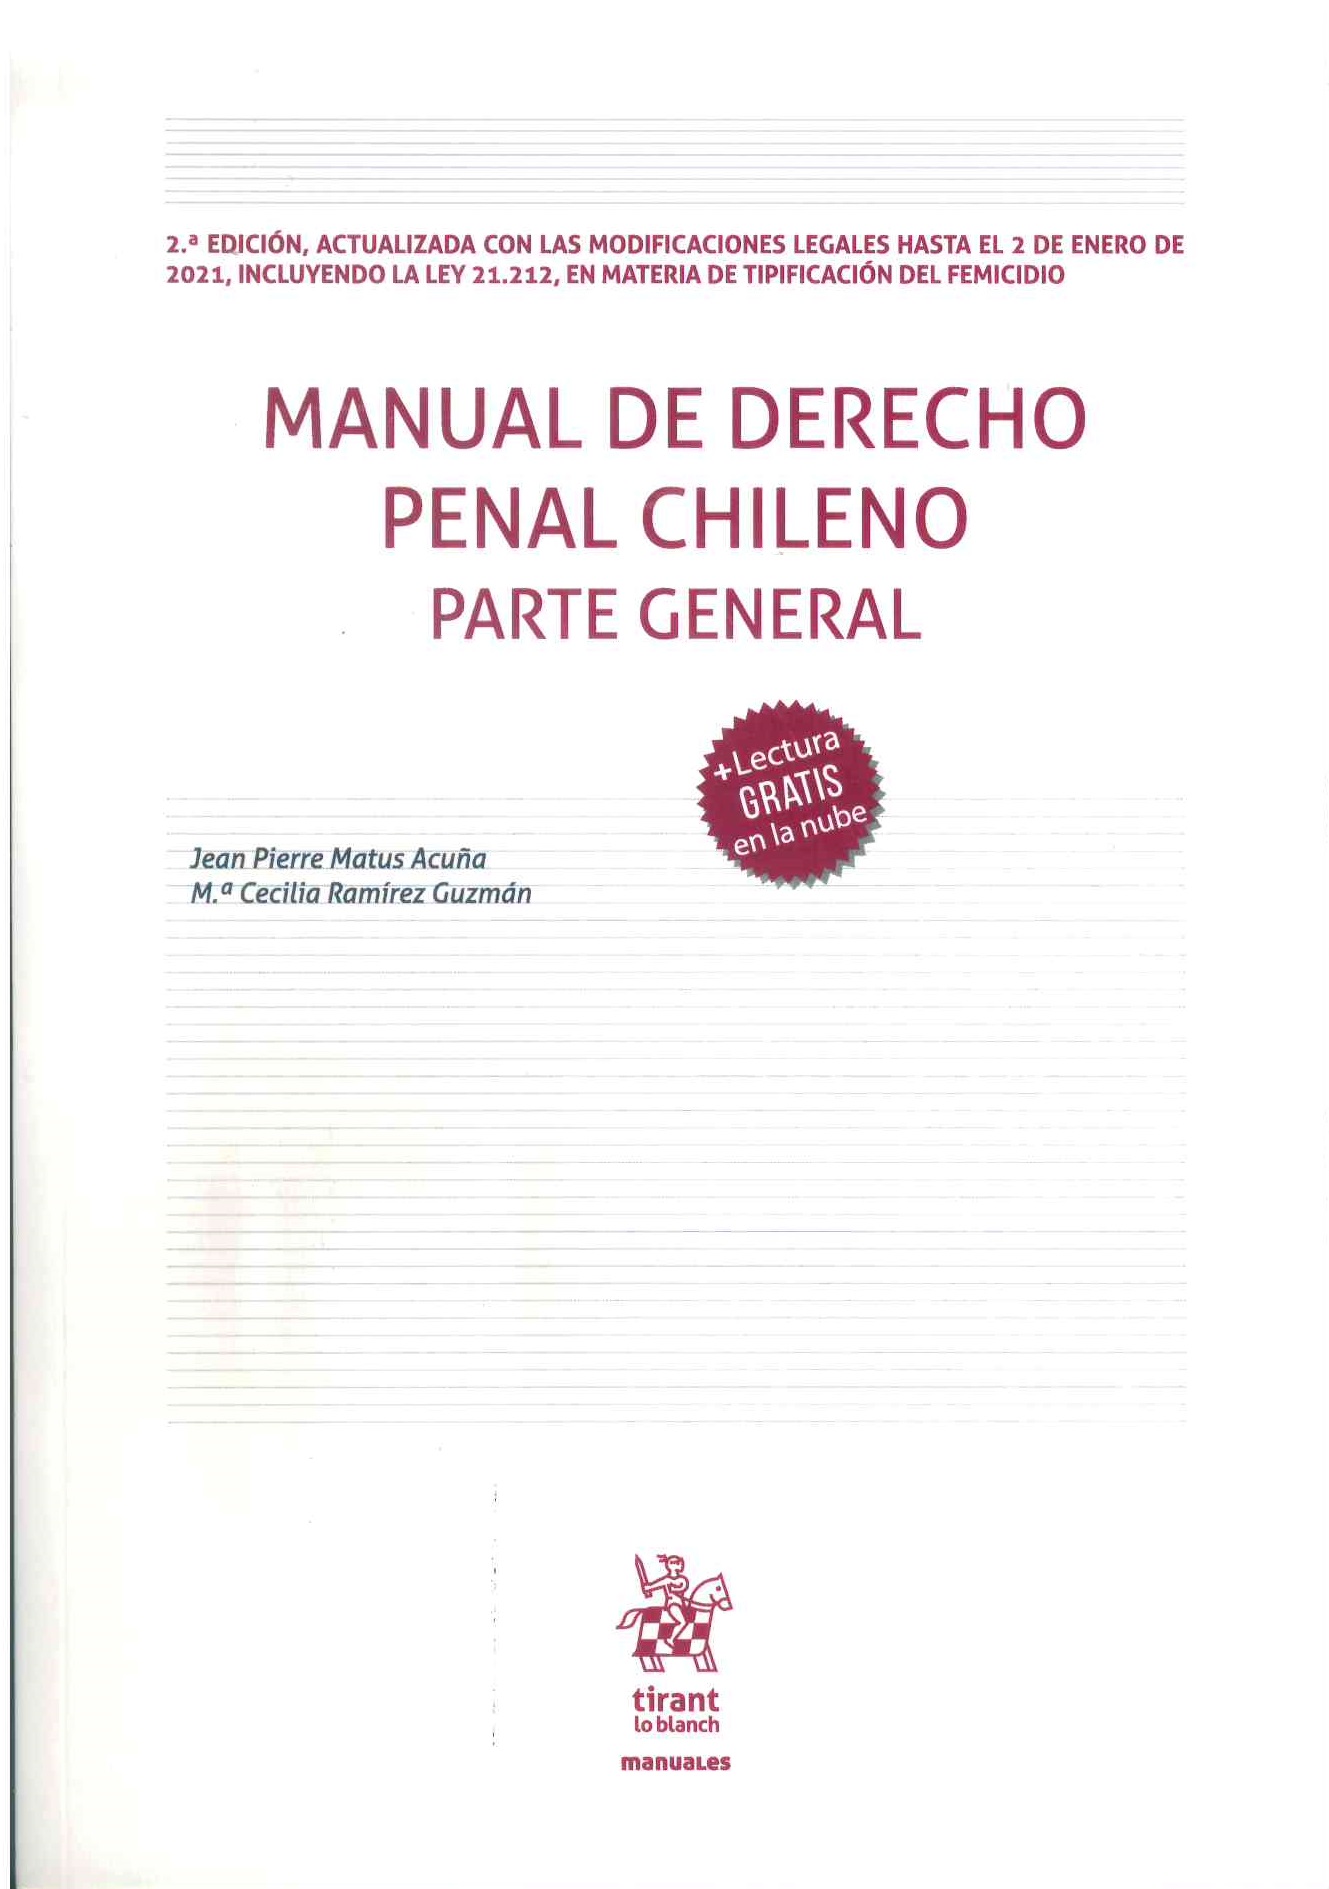 Manual de derecho penal chileno parte general. 